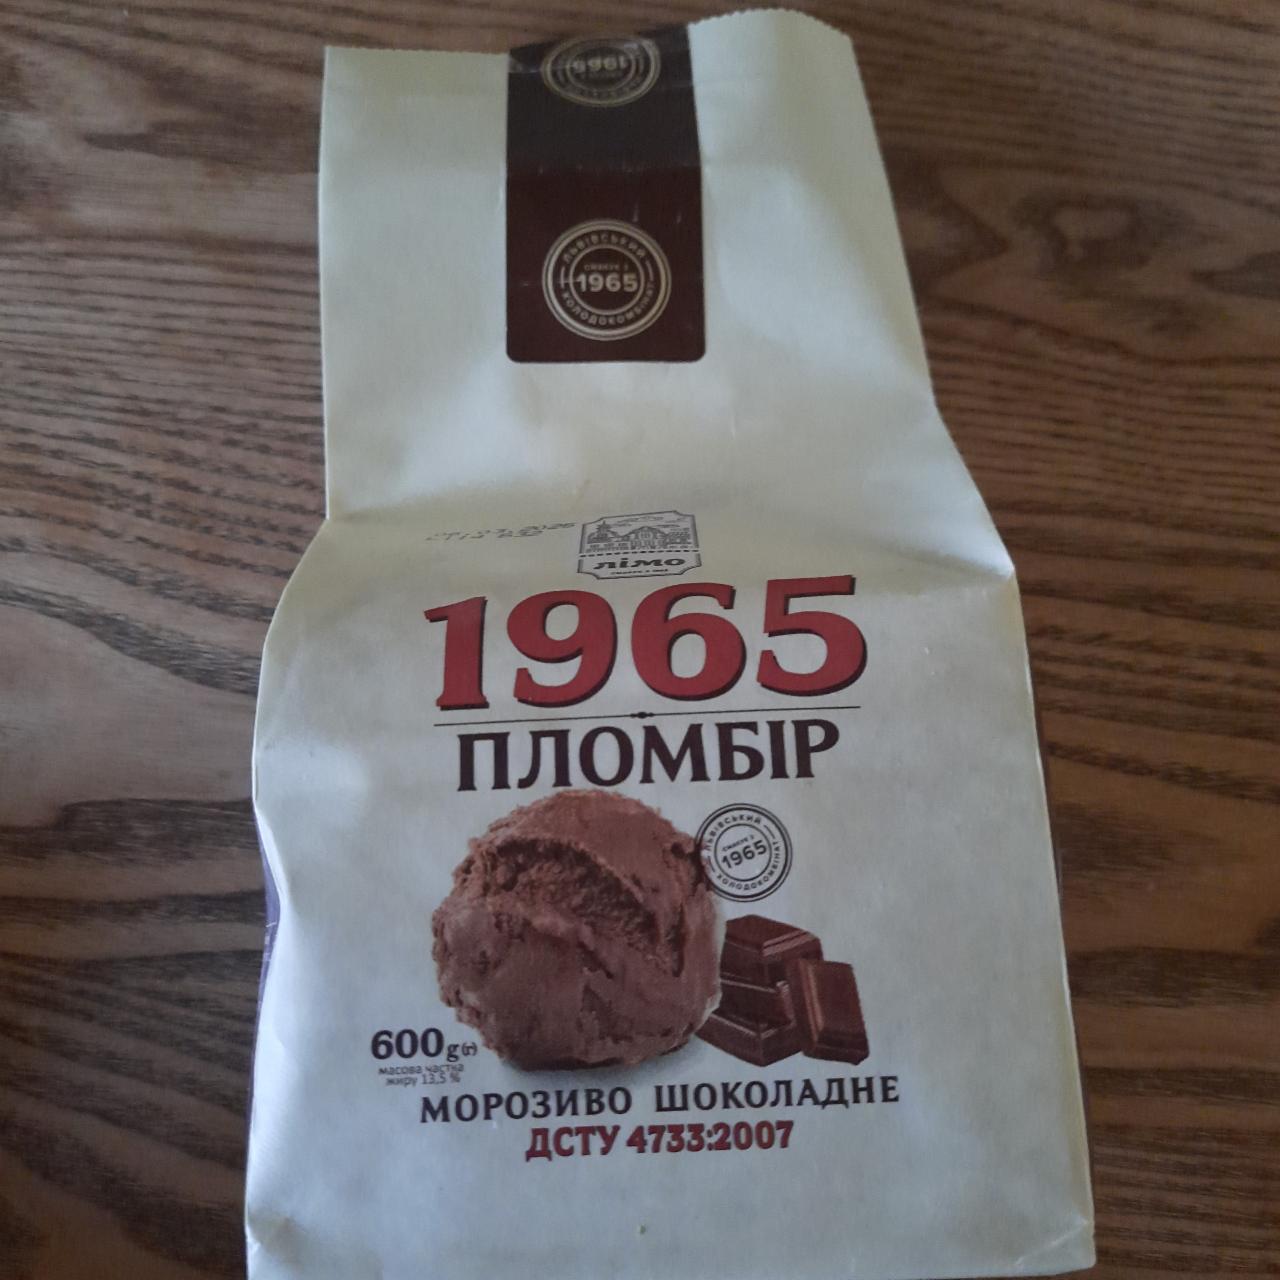 Фото - Морозиво шоколадне Пломбір 1965 Лімо